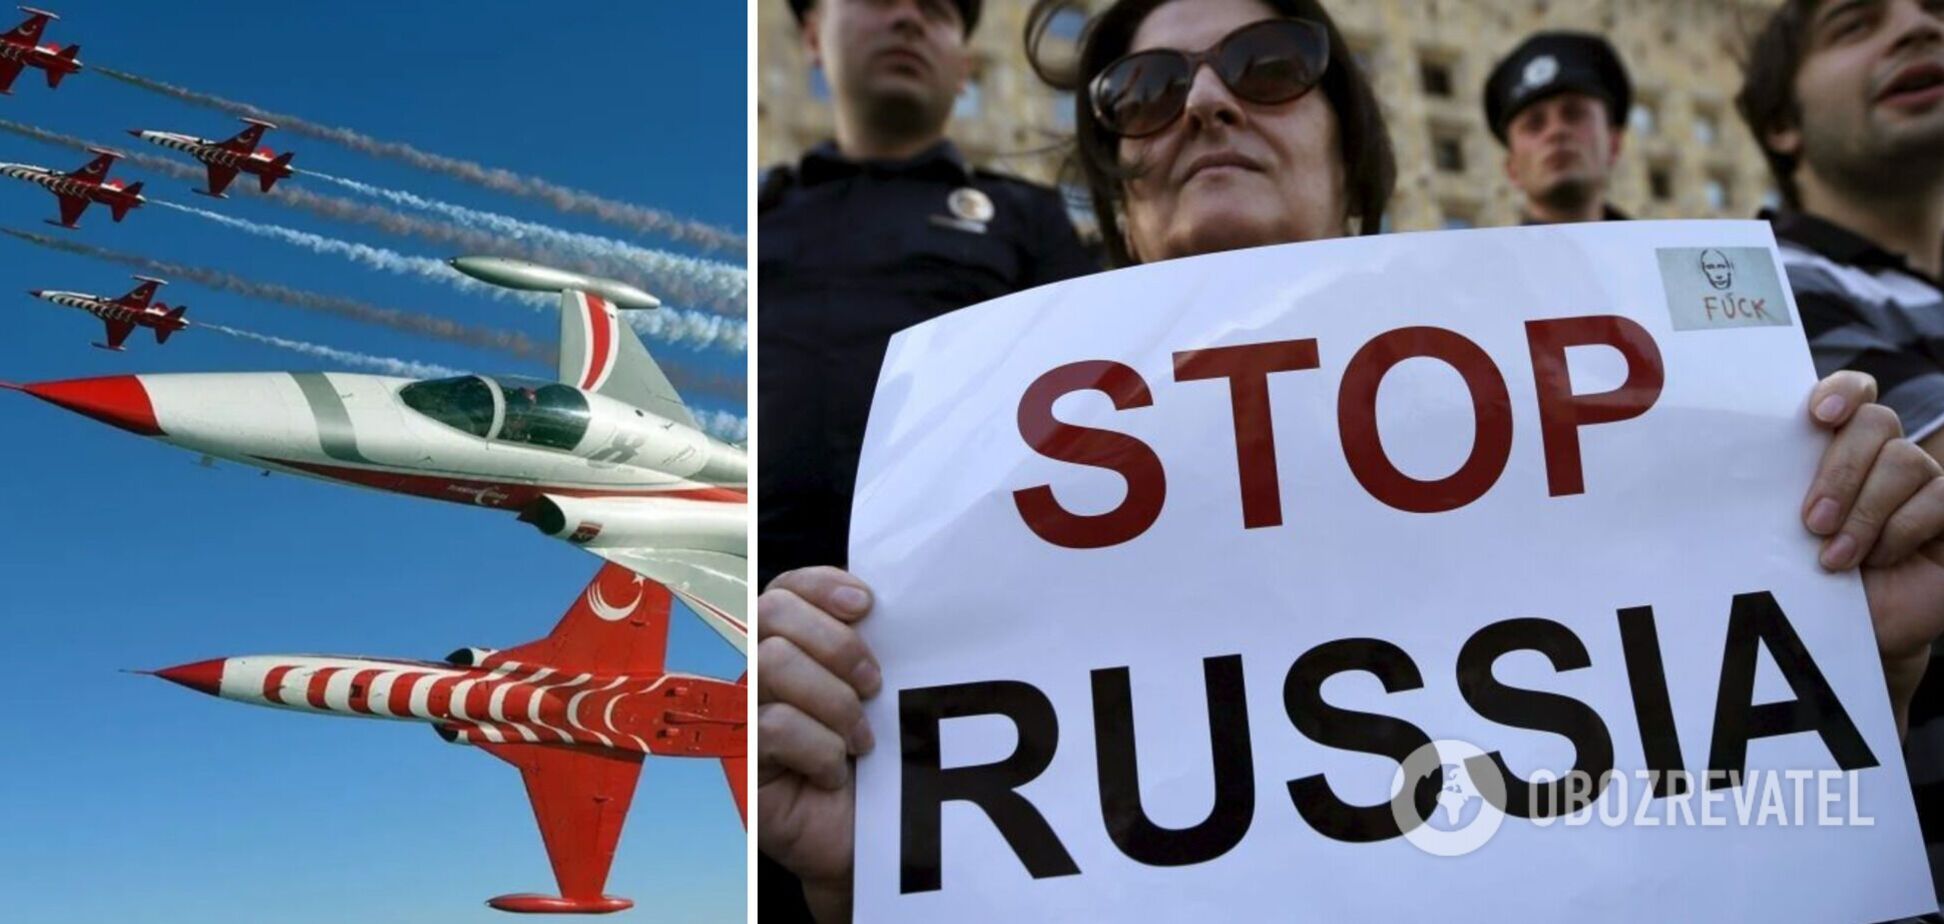 Членам російської делегації на Міжнародному авіашоу у Туреччині радять не казати, що вони з РФ. Документ